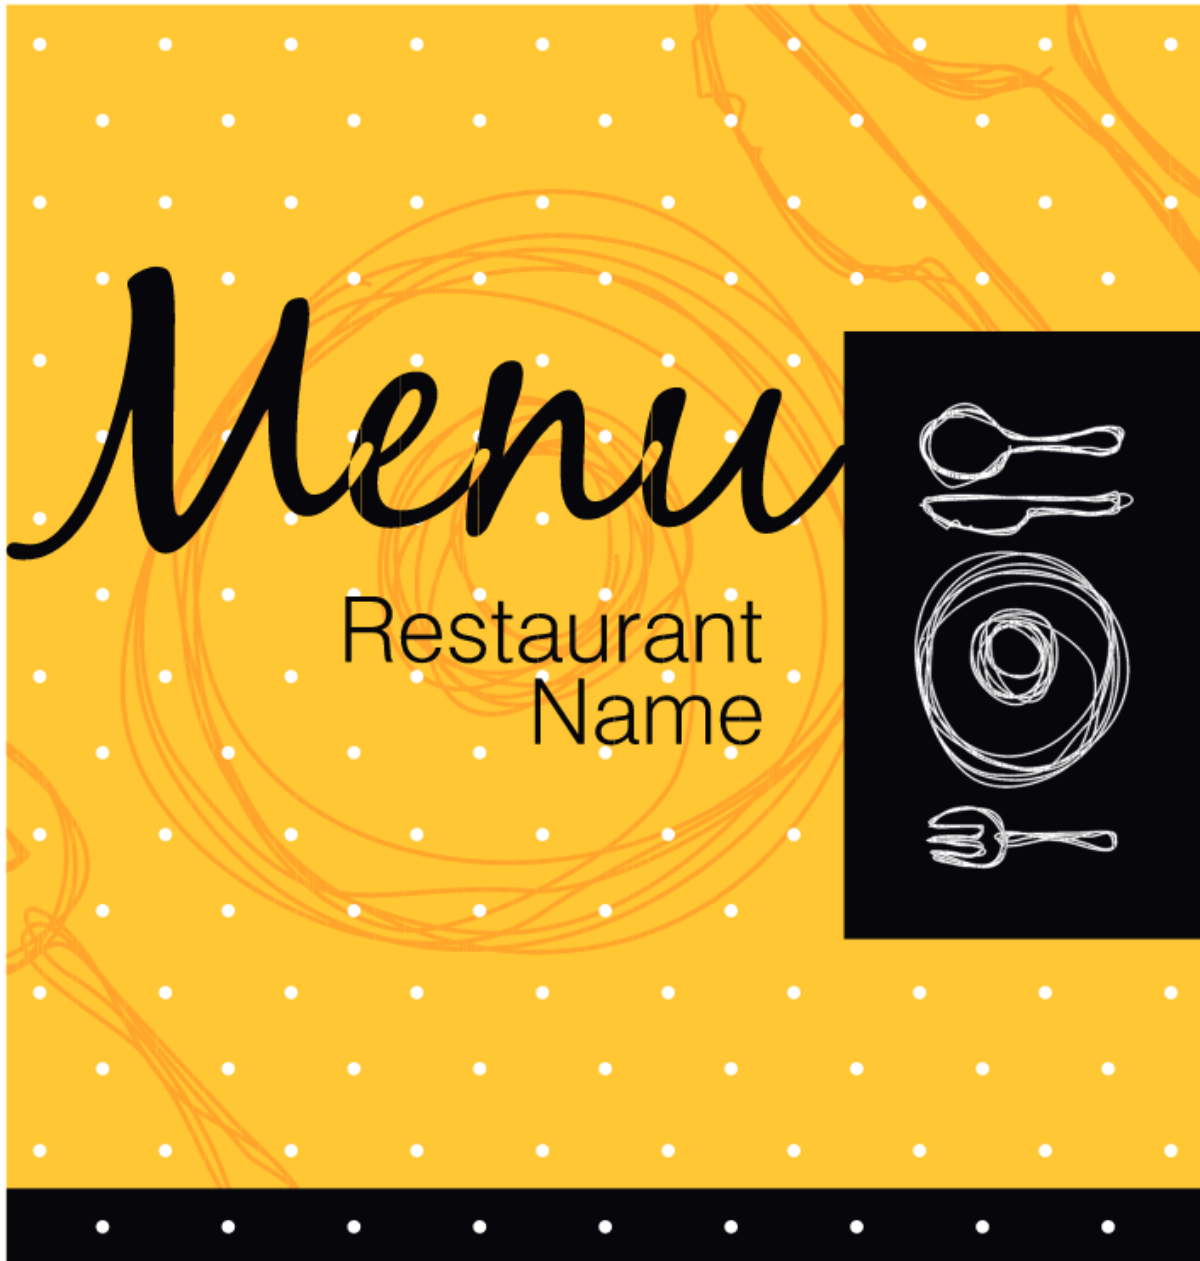 Restaurant menu designs: Một nhà hàng chuyên nghiệp luôn có một thiết kế menu đẹp mắt và chuyên nghiệp. Bất kỳ ai muốn trải nghiệm những điều đó đều có thể tìm thấy thật nhiều ý tưởng và sự đa dạng trong những kiểu thiết kế menu đẹp nhất. Hãy cùng xem và tìm kiếm cho riêng mình những thứ tốt nhất.